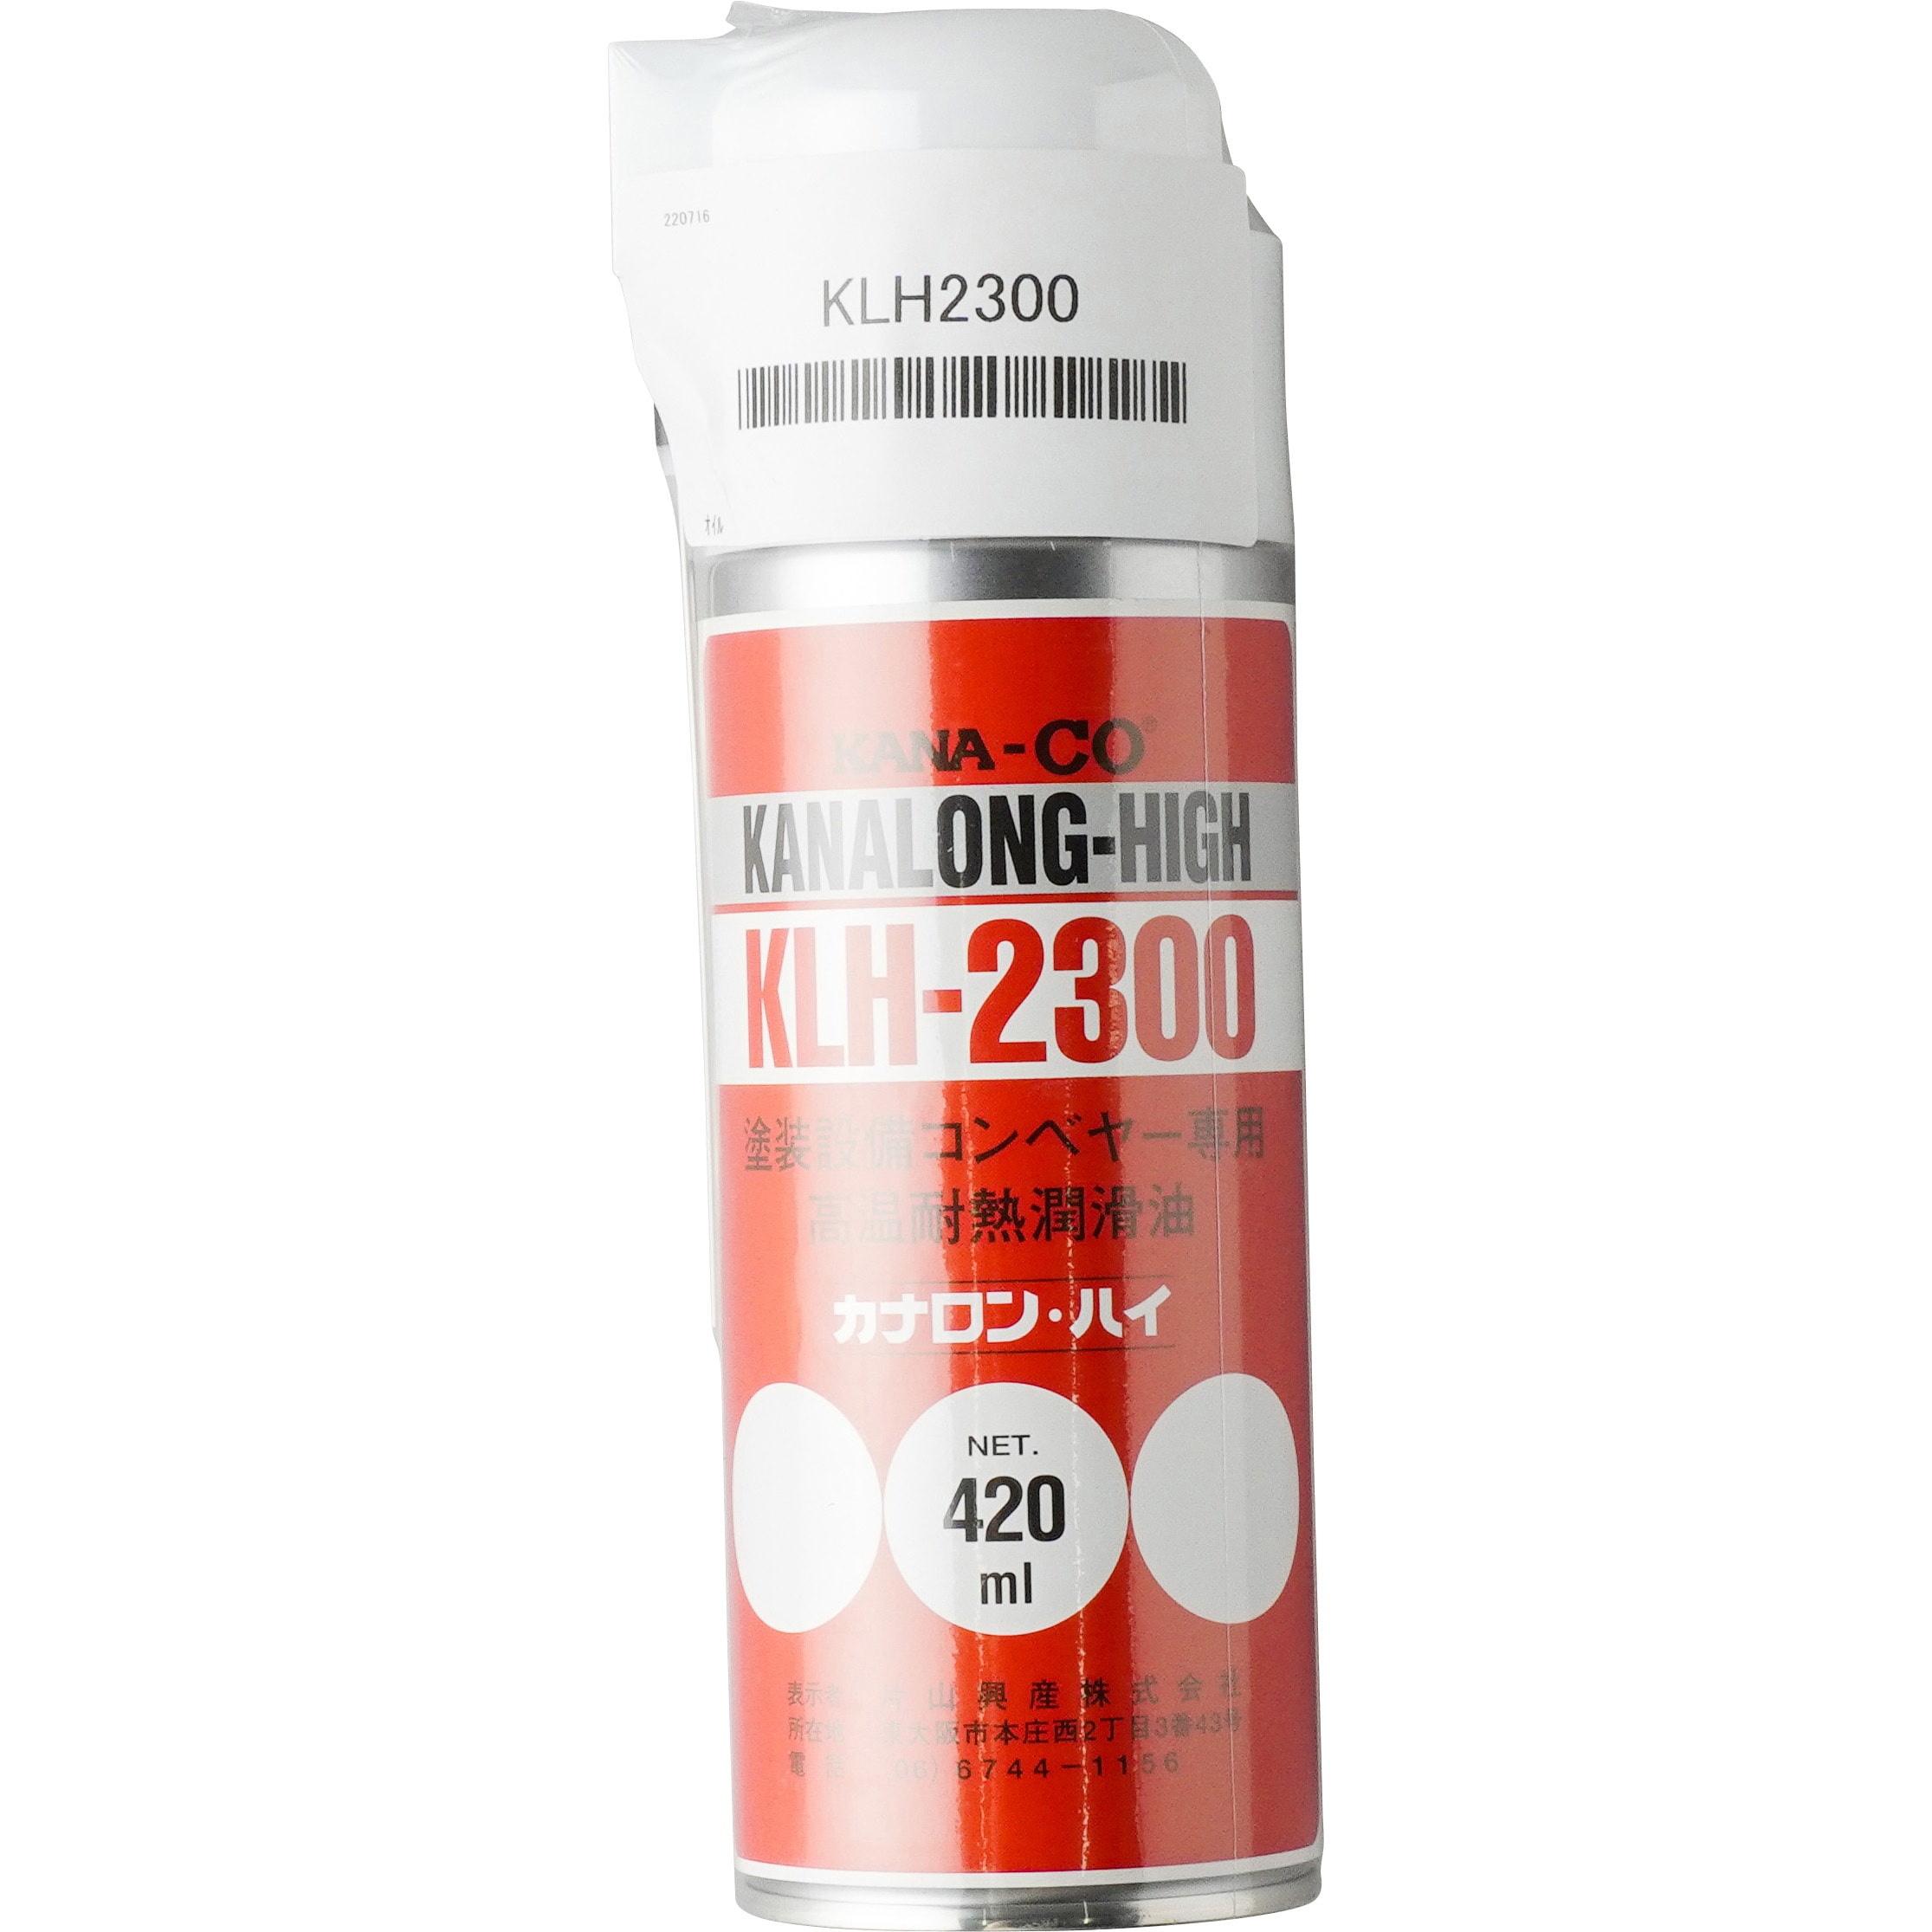 KLH2300 カナロン・ハイ(耐熱潤滑油) 1本(420mL) 片山チエン(KANA 